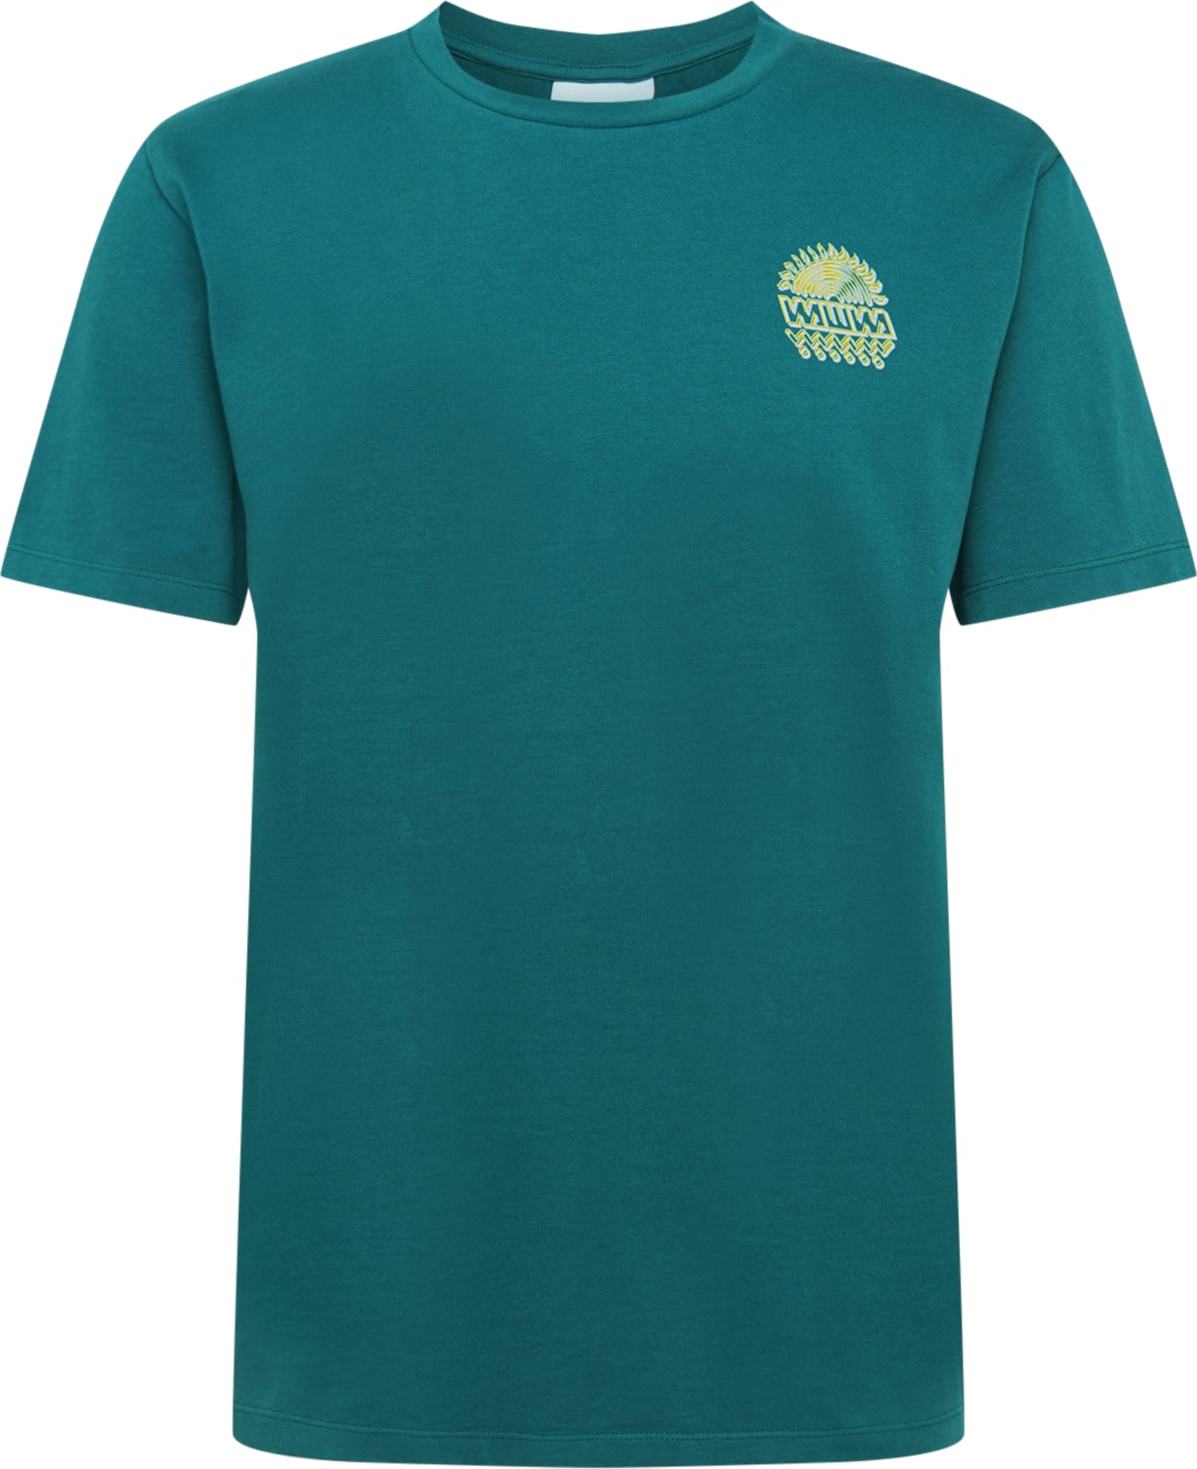 WAWWA T-Shirt zelená / šeříková / žlutá